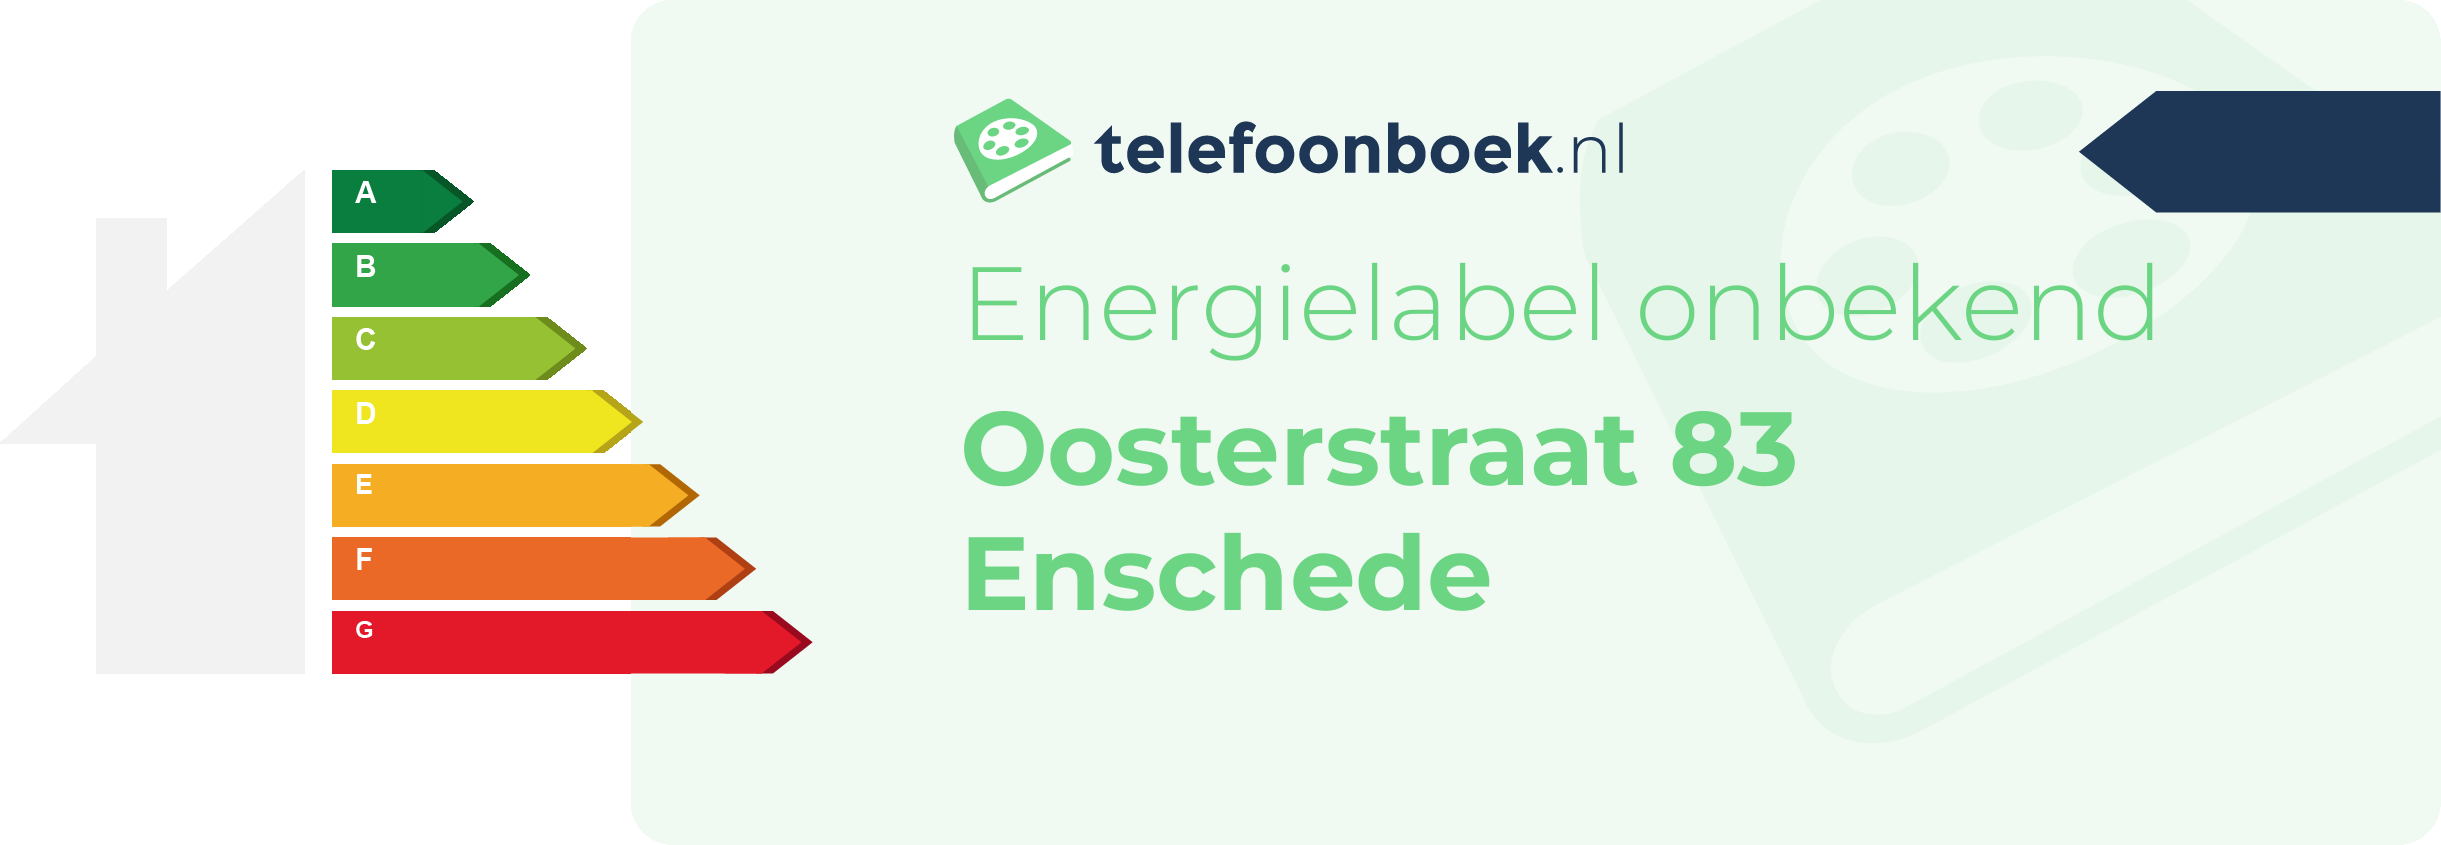 Energielabel Oosterstraat 83 Enschede